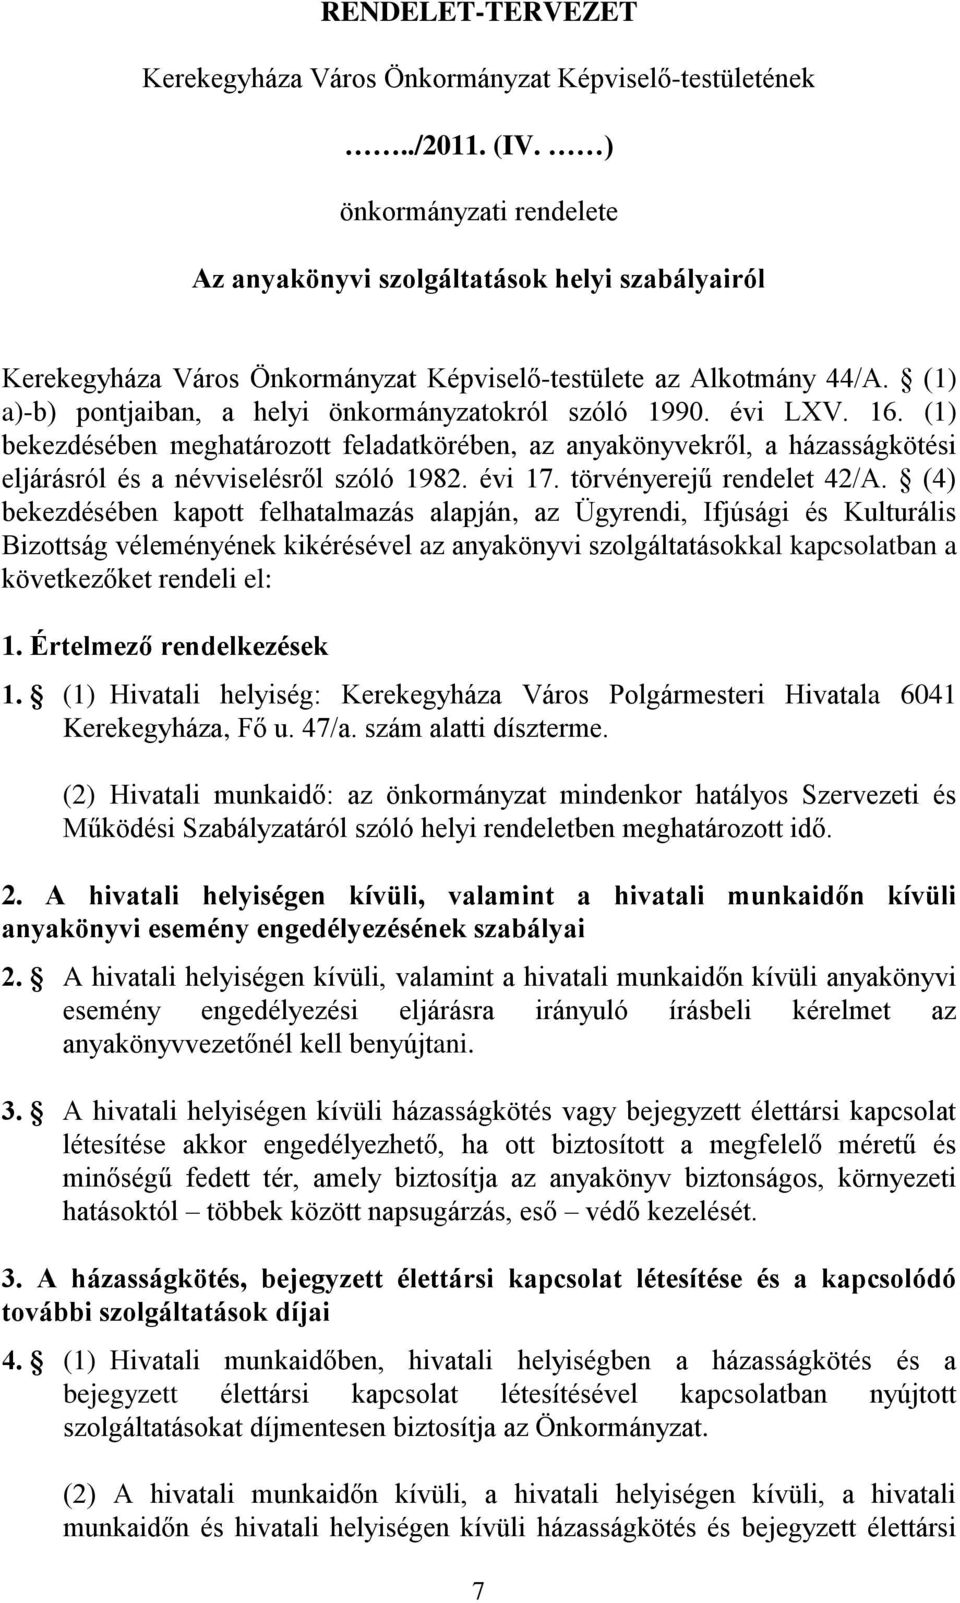 (1) a)-b) pontjaiban, a helyi önkormányzatokról szóló 1990. évi LXV. 16. (1) bekezdésében meghatározott feladatkörében, az anyakönyvekről, a házasságkötési eljárásról és a névviselésről szóló 1982.